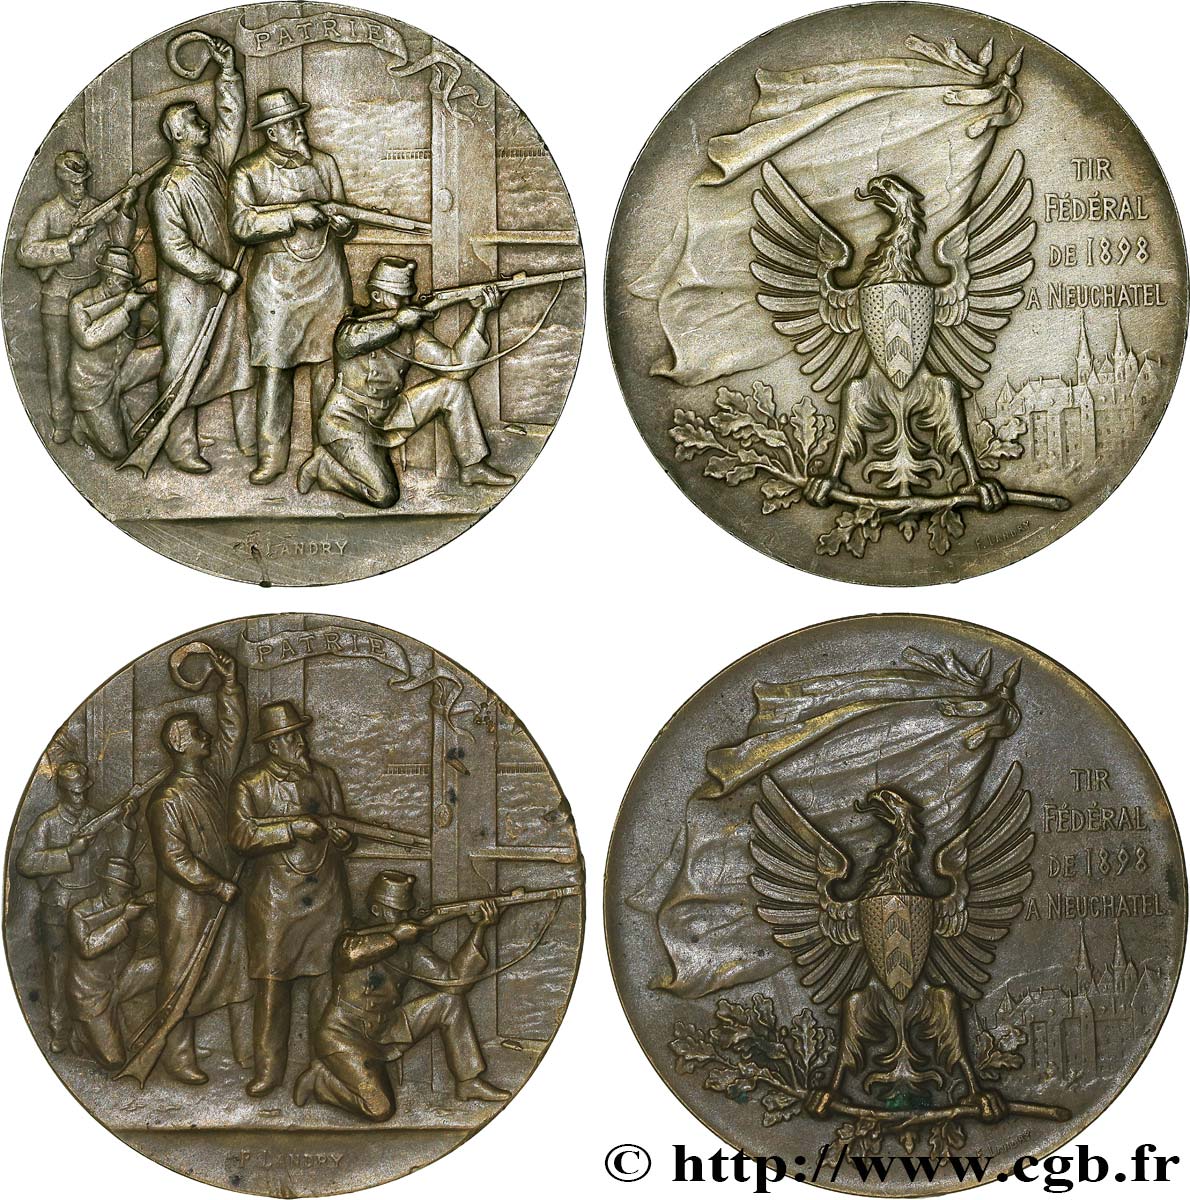 SWITZERLAND - CONFEDERATION OF HELVETIA Médaille, Patrie, Tir fédéral, lot de 2 ex. AU